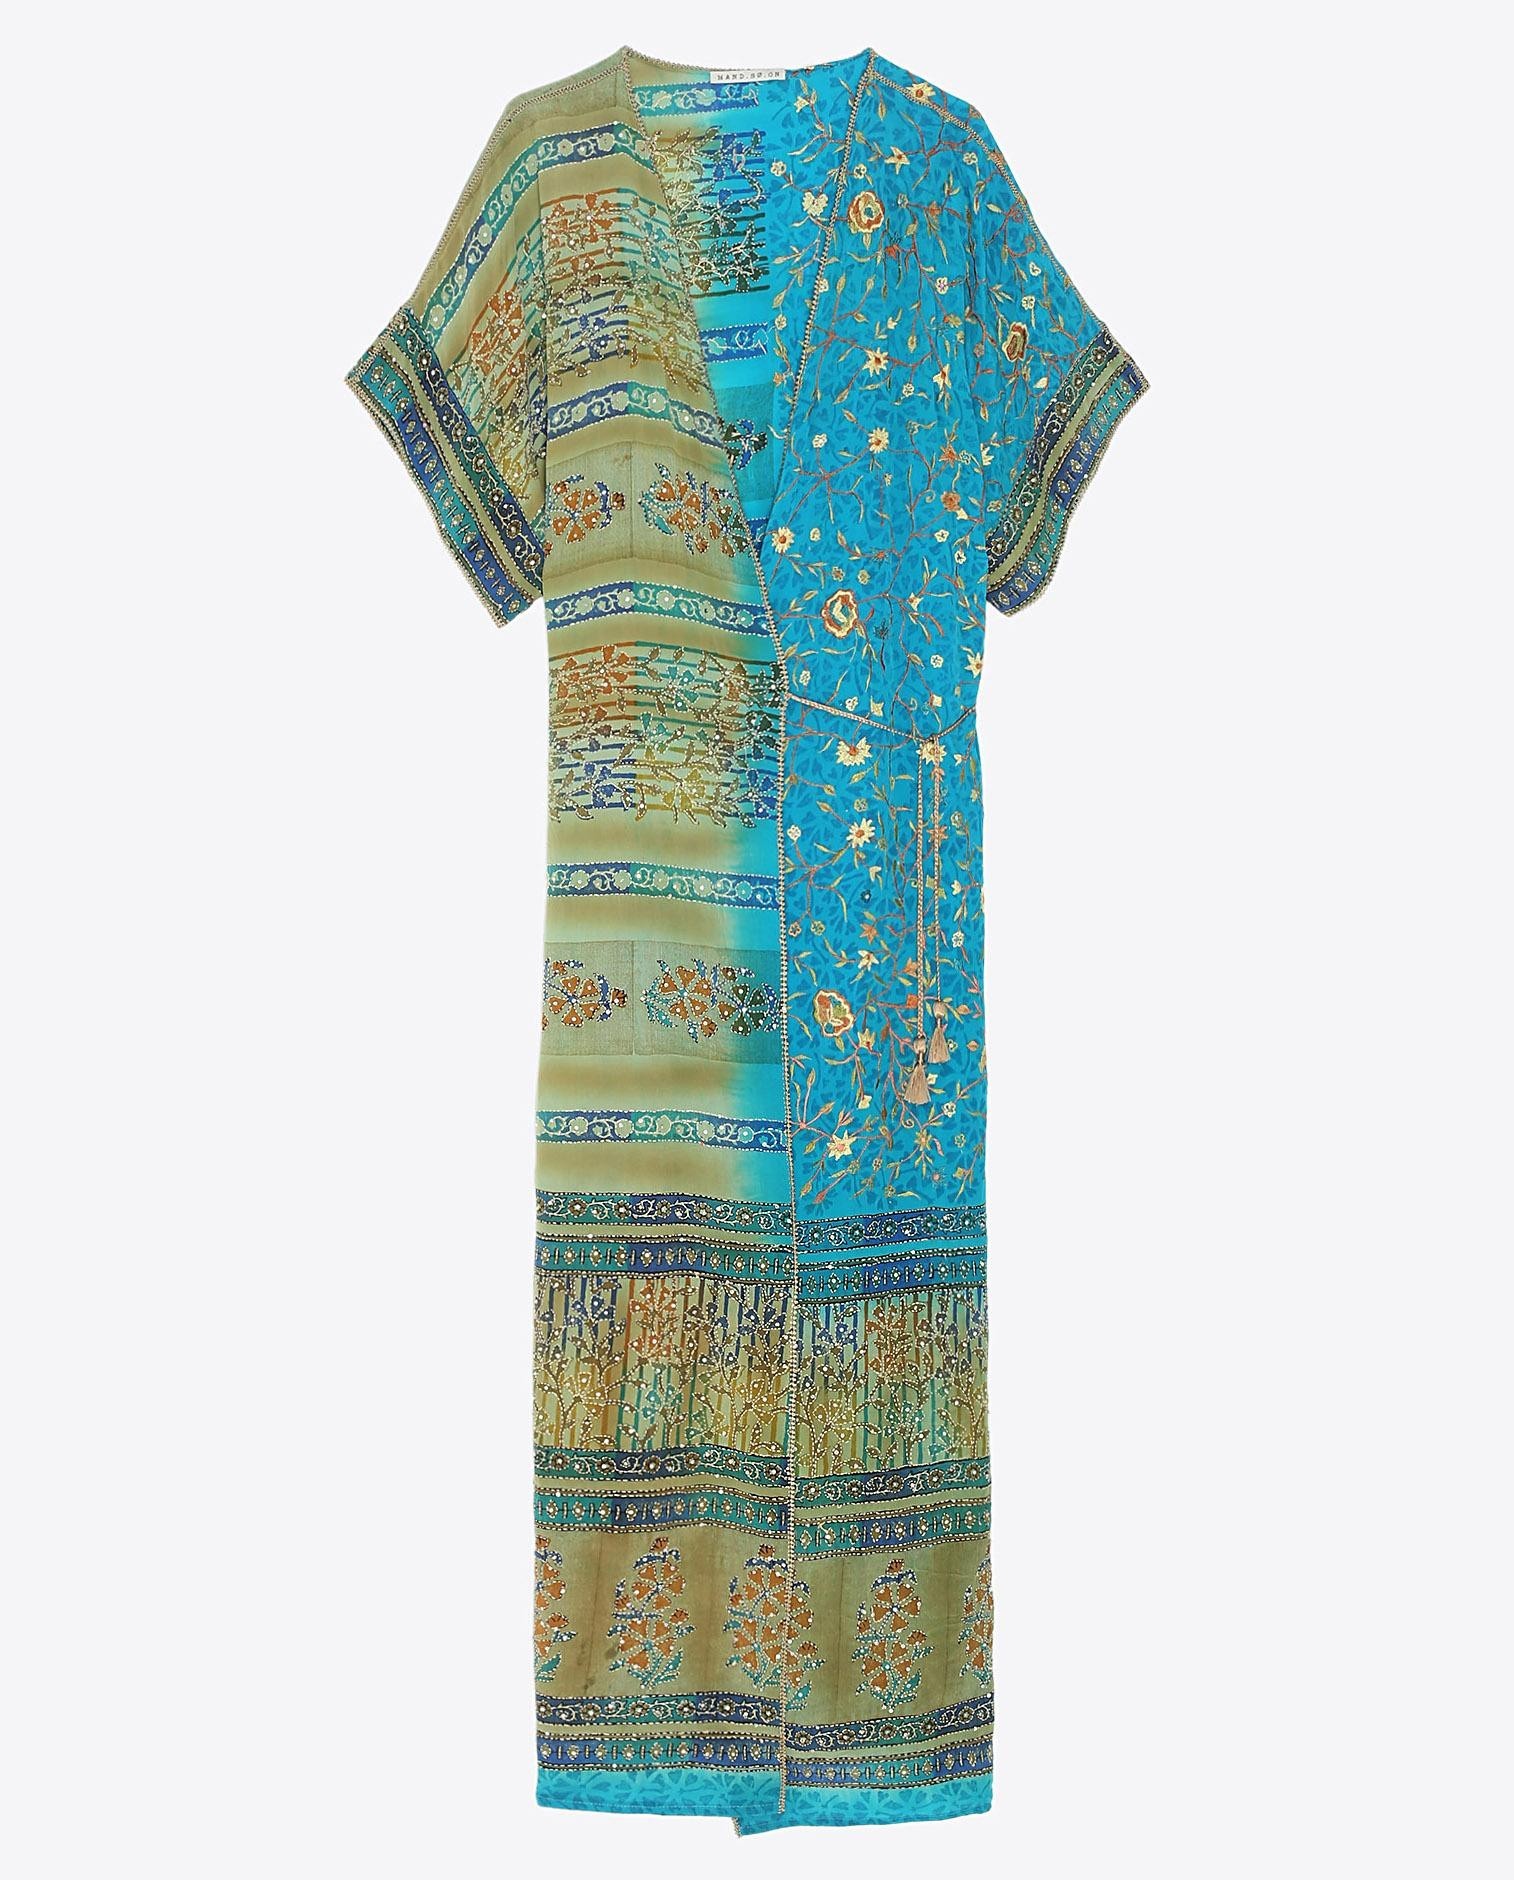 Robe Kimono sari vintage re-brodé dans les teintes de turquoise et vert.